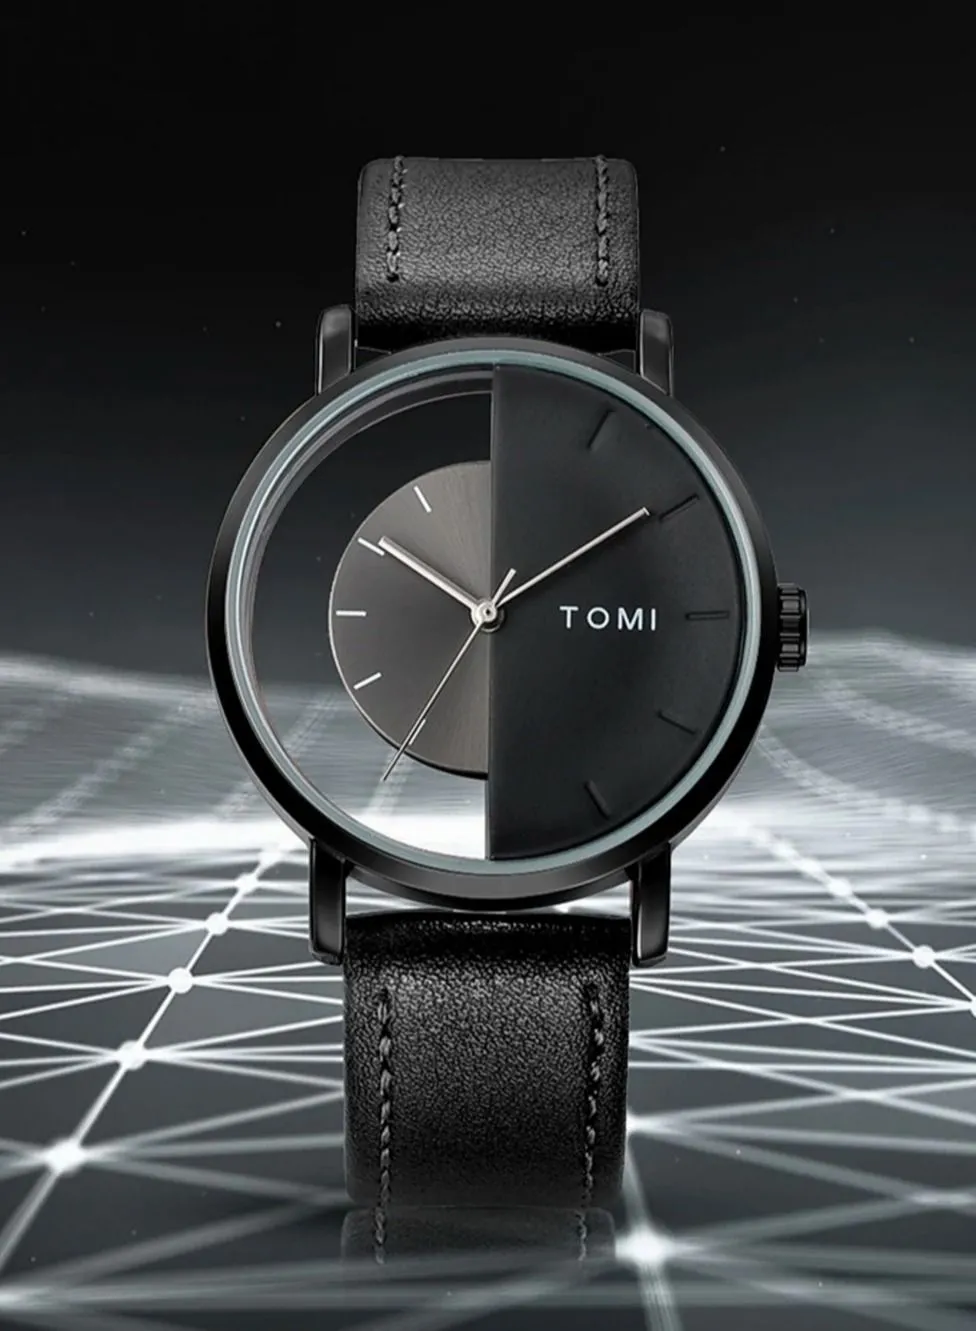 تومي ساعة يد أنيقة للجنسين بحزام جلد أسود للرجال والنساء من تومي، حجم وجه الساعة 40 ملم وسمك 9 ملم